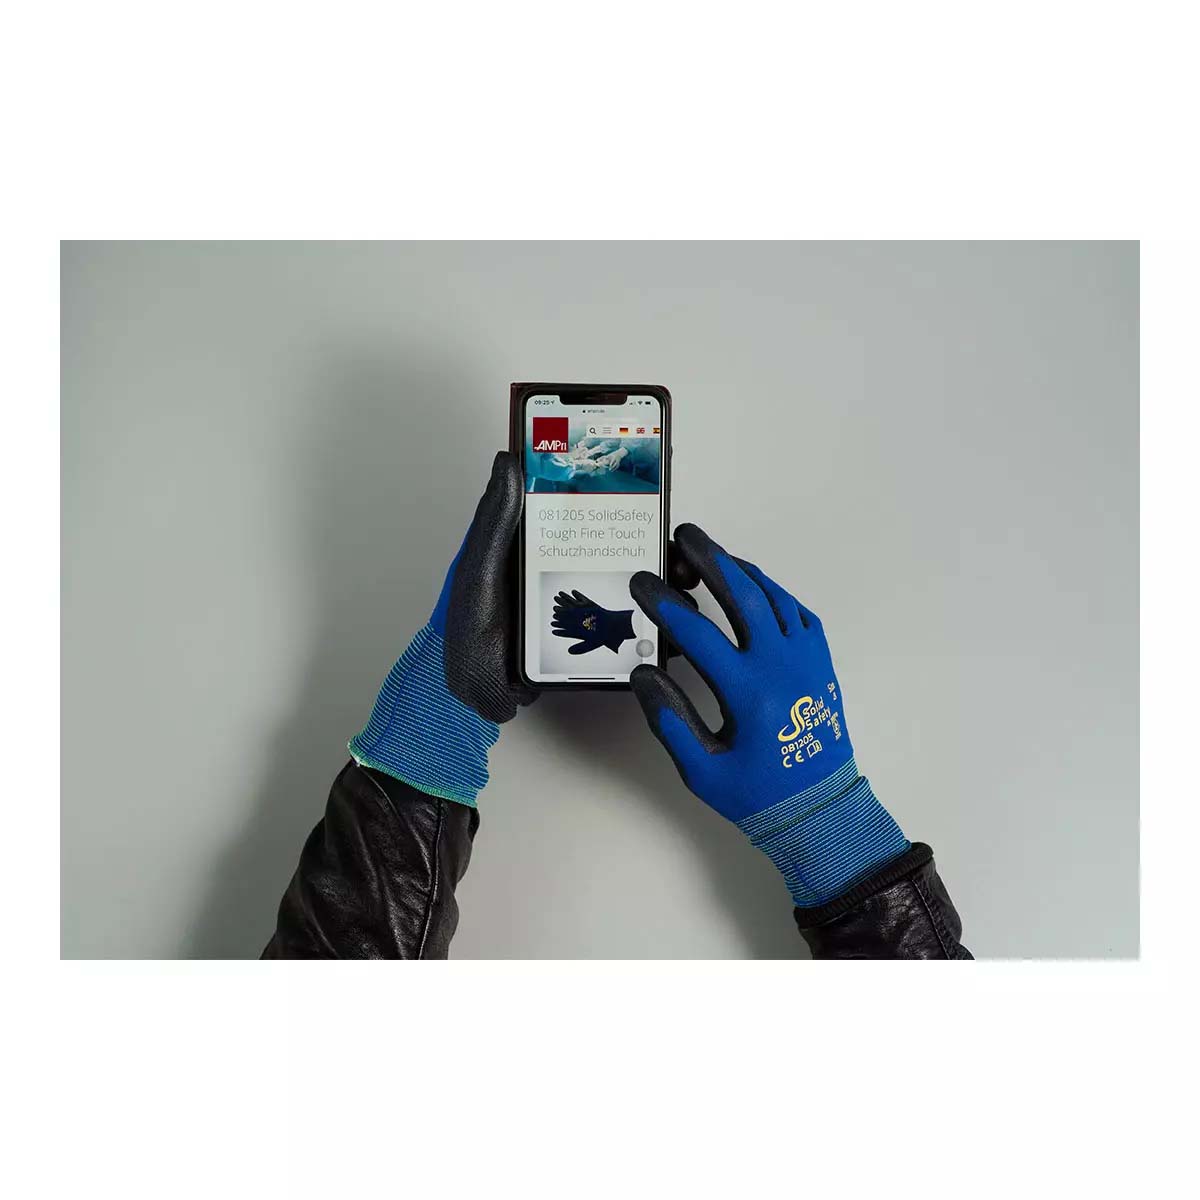 SolidSafety Tough Fine Touch Schutzhandschuh